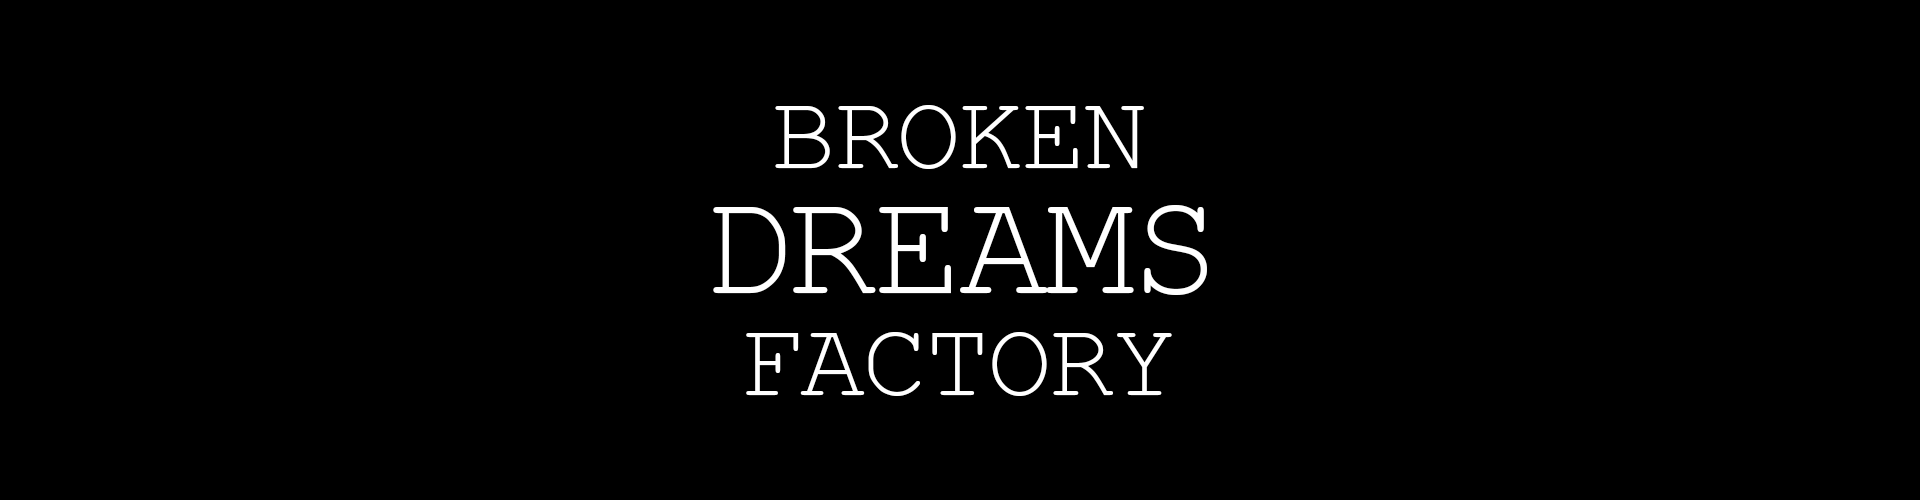 Broken Dreams Factory